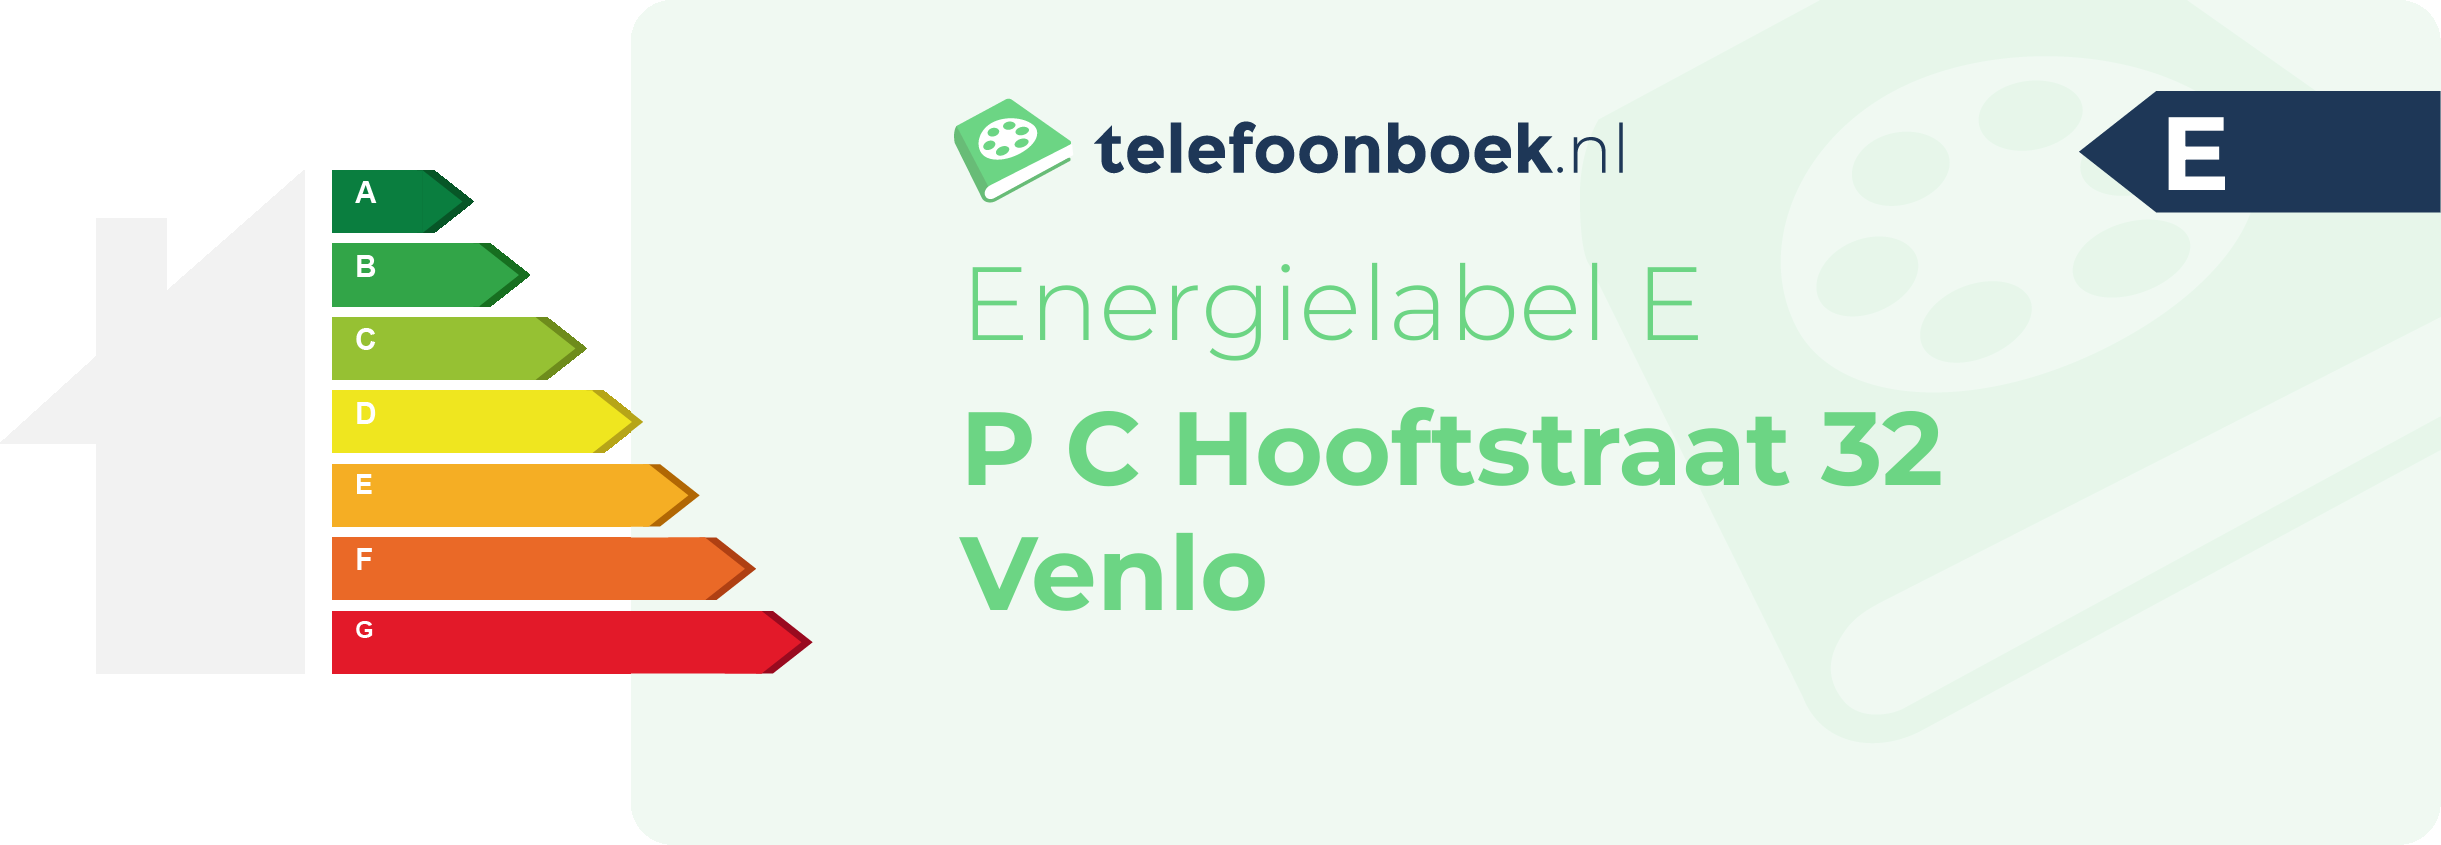 Energielabel P C Hooftstraat 32 Venlo